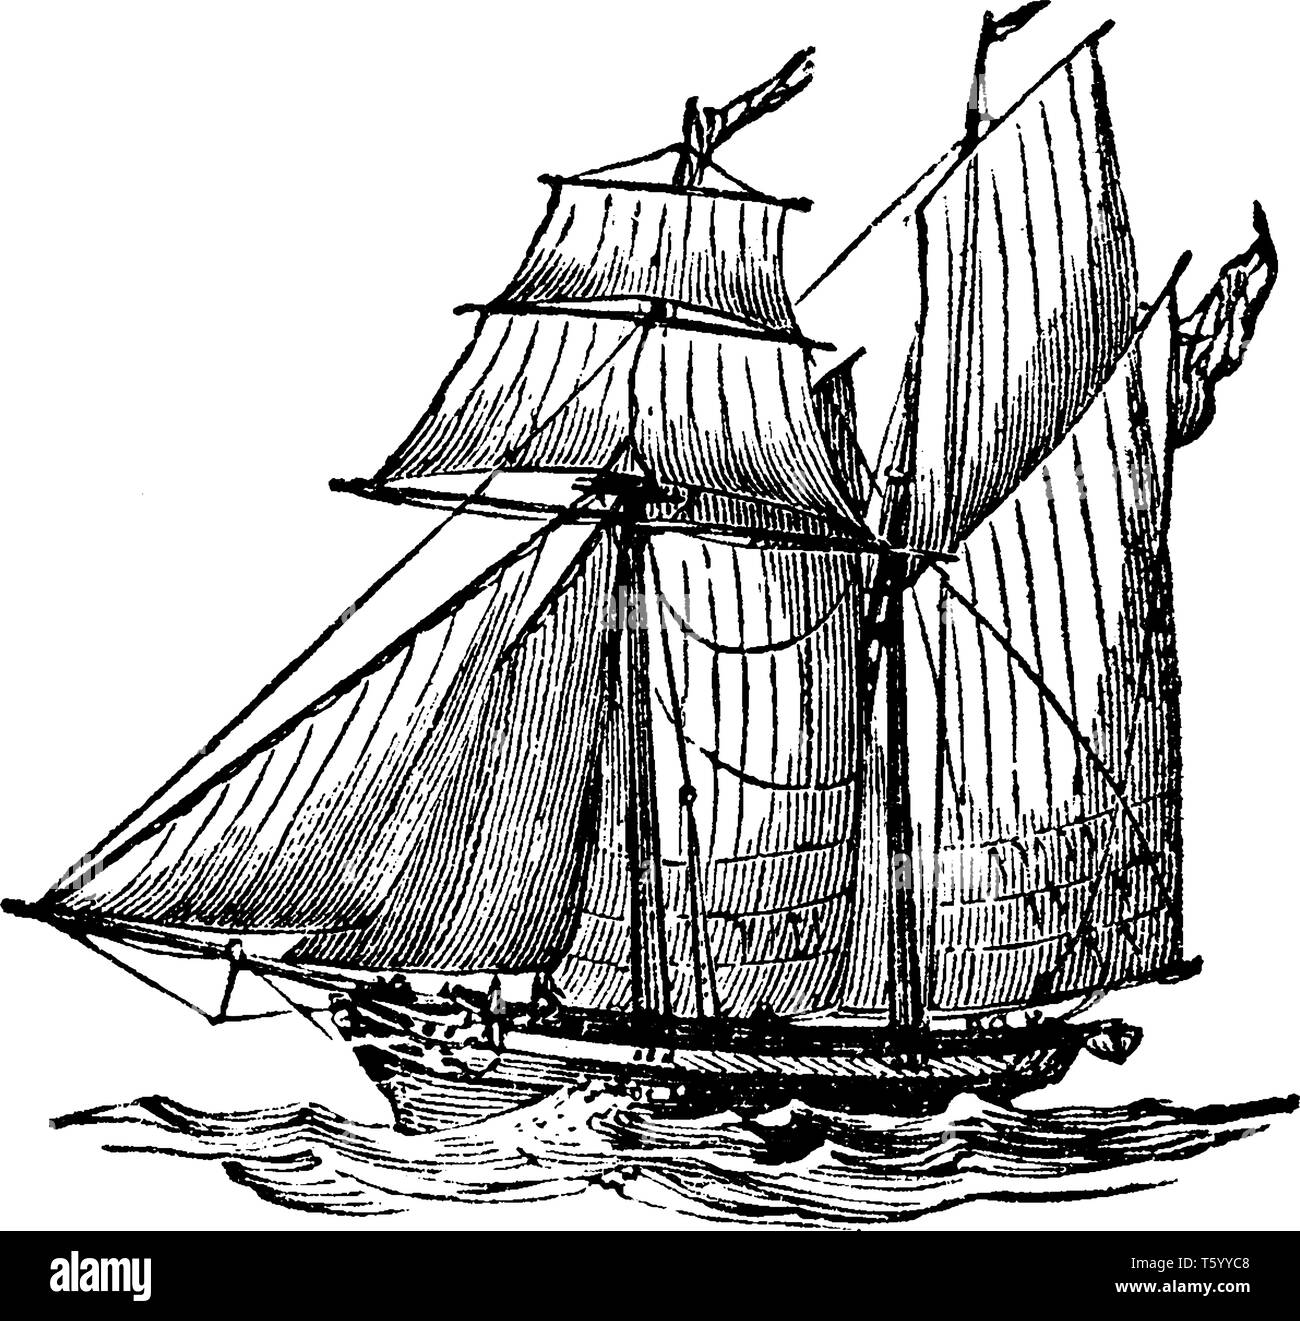 Schooner Ship ist ein kleines schnelles Segeln scharfe gebaute Schiff mit einer Masse von zwei und die Direktion Segel der Haspelhorizontalverstellung Typ, vintage Strichzeichnung oder engr Stock Vektor